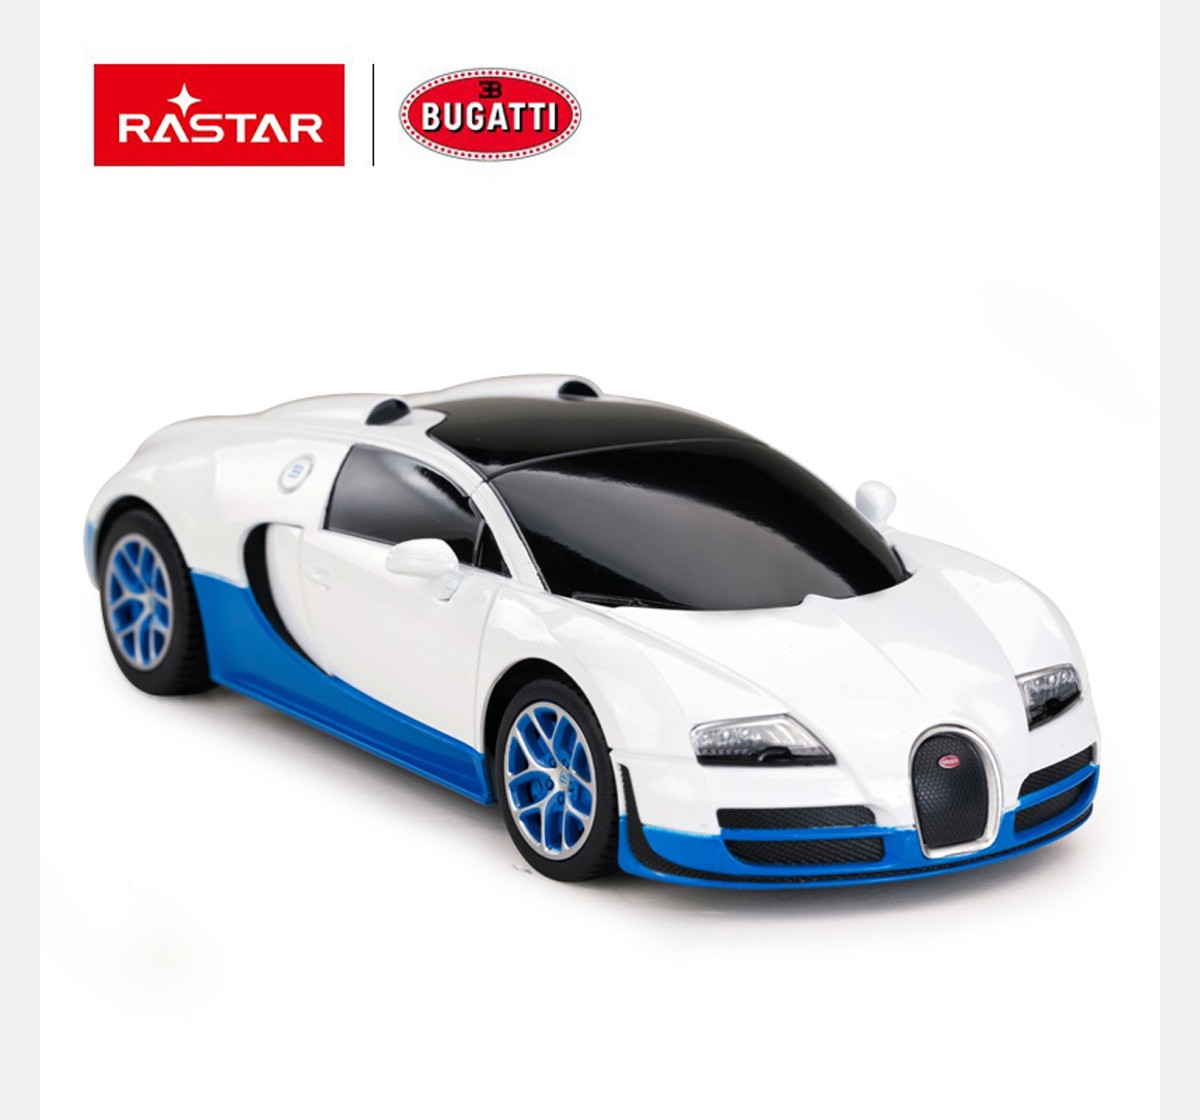 Rastar 1:24 Bugatti Grand Sport Vitesse Remote Control Car, 2Y+ (Multicolor)